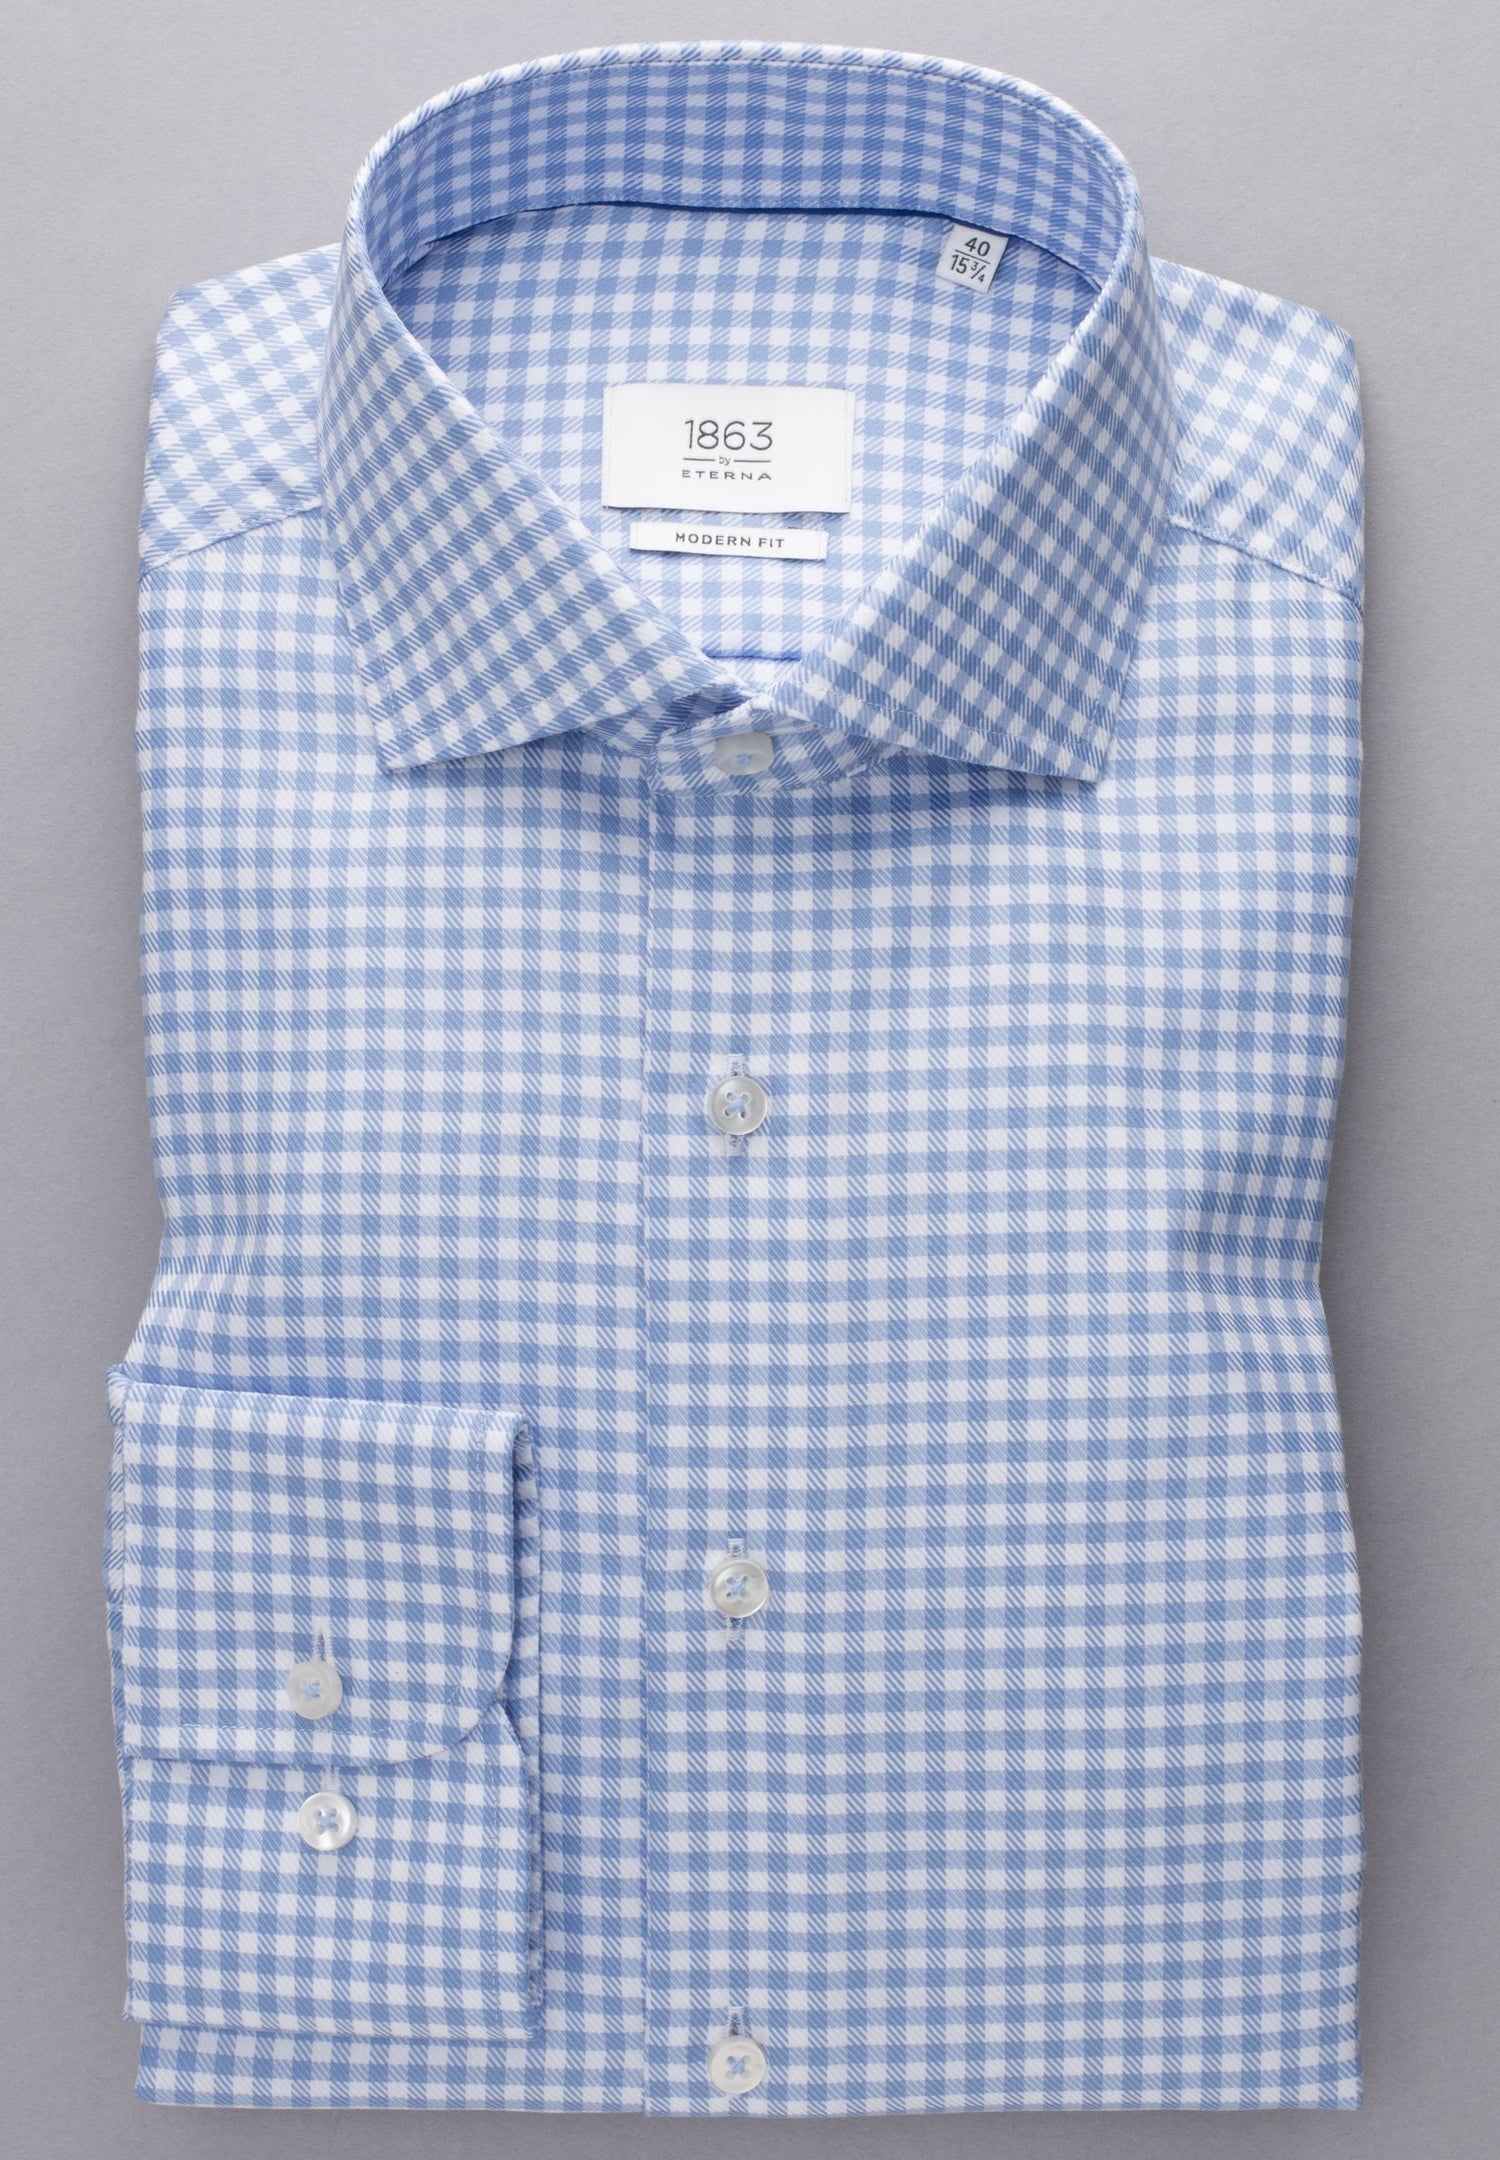 1863 by Eterna Modern Fit Shirt - Blue – Robert Gault